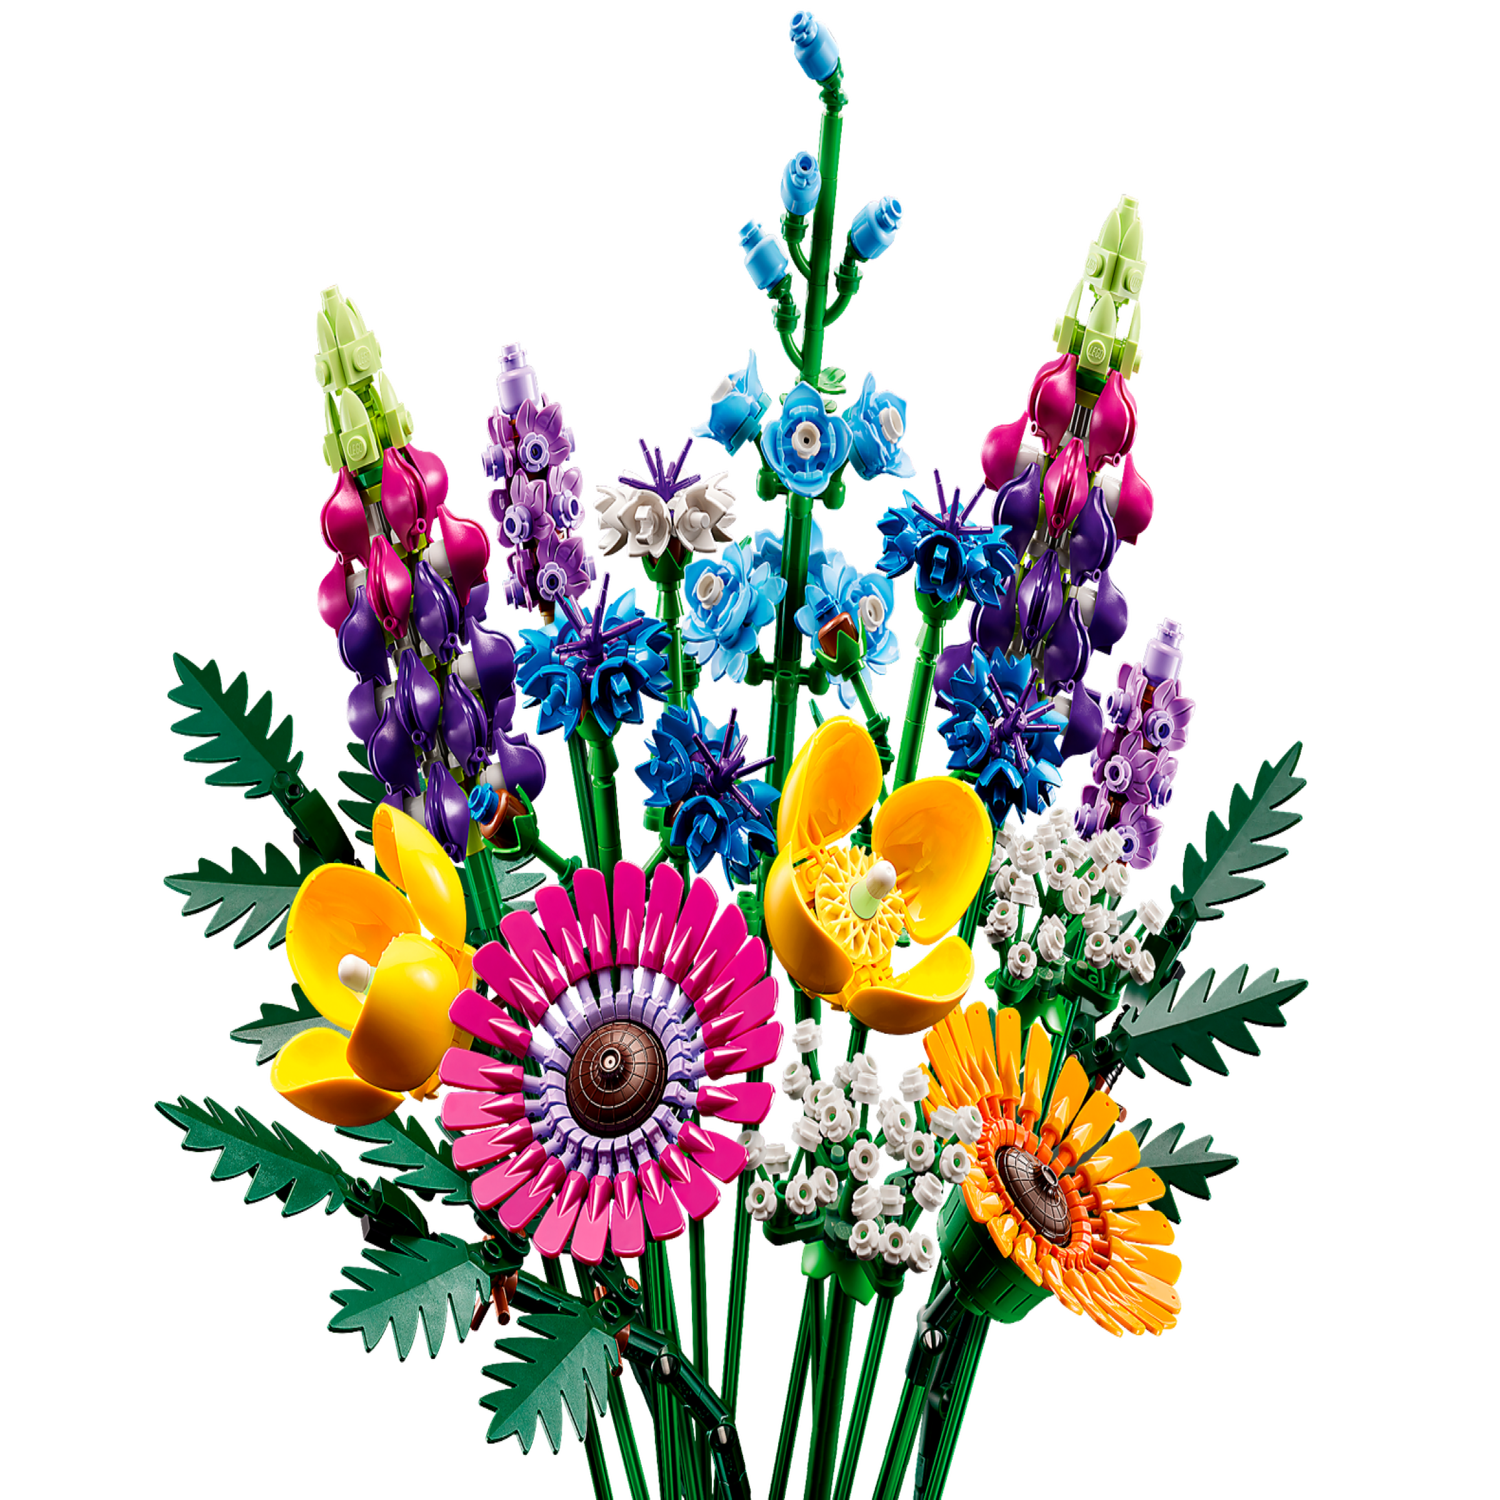 LEGO - Le bouquet de fleurs sauvages - Assemblage et construction